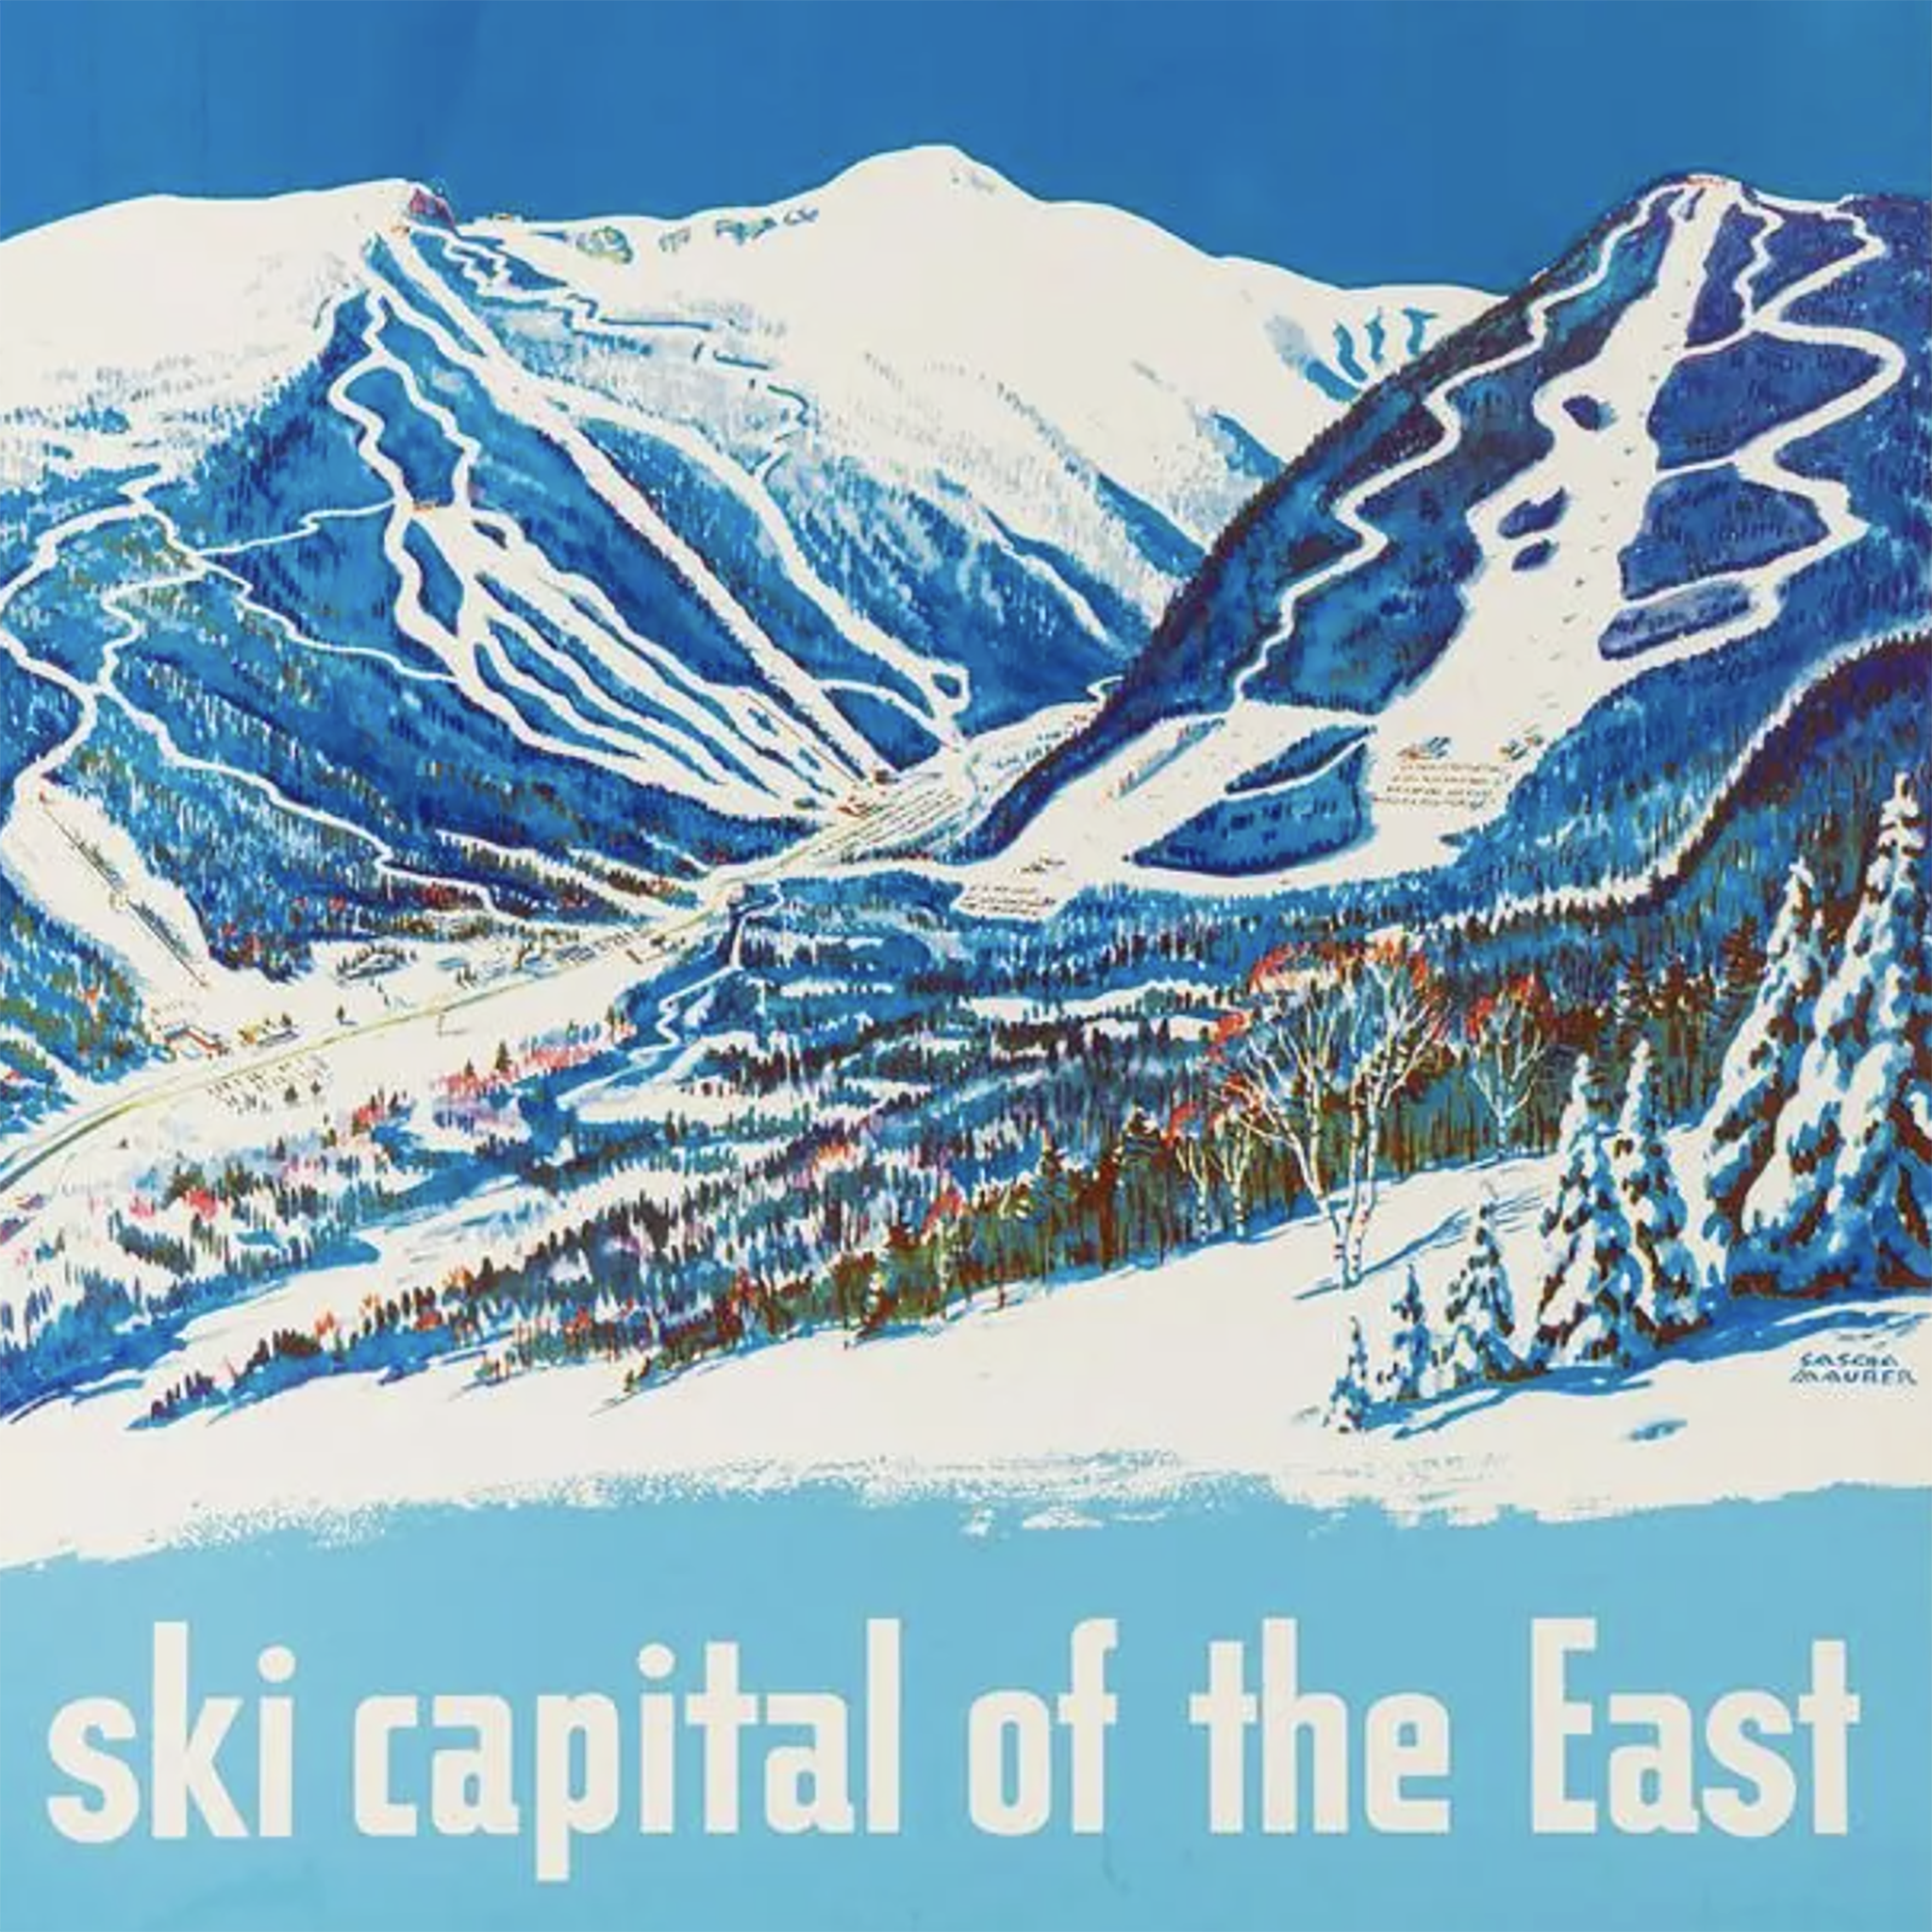 Stowe Vermont Original Ski Poster